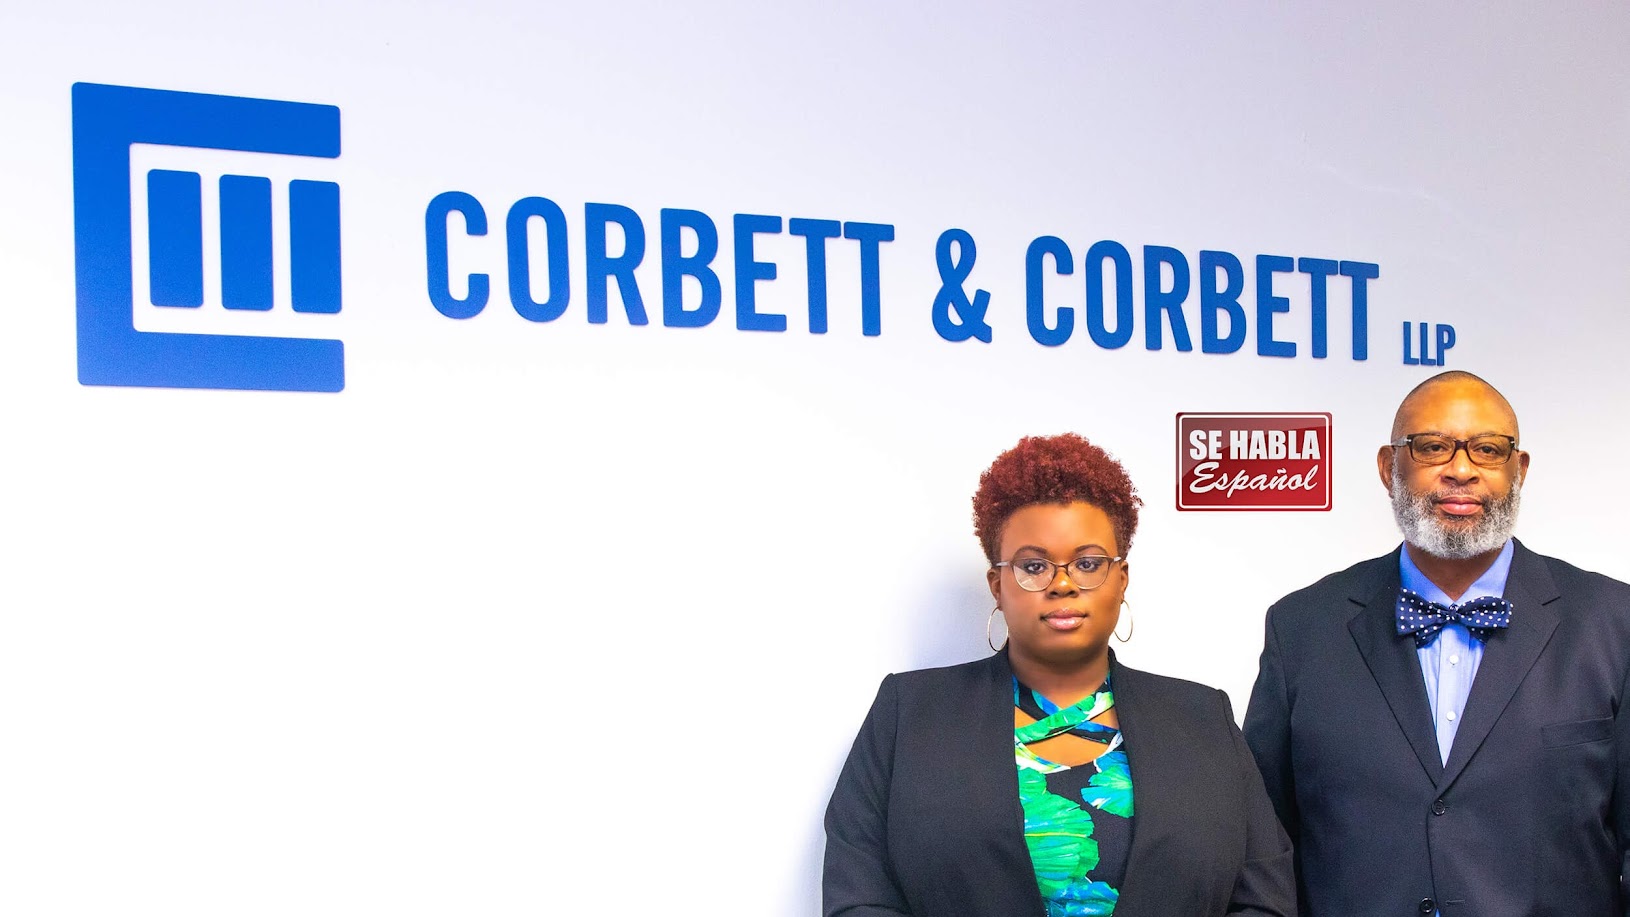 Corbett & Corbett LLP